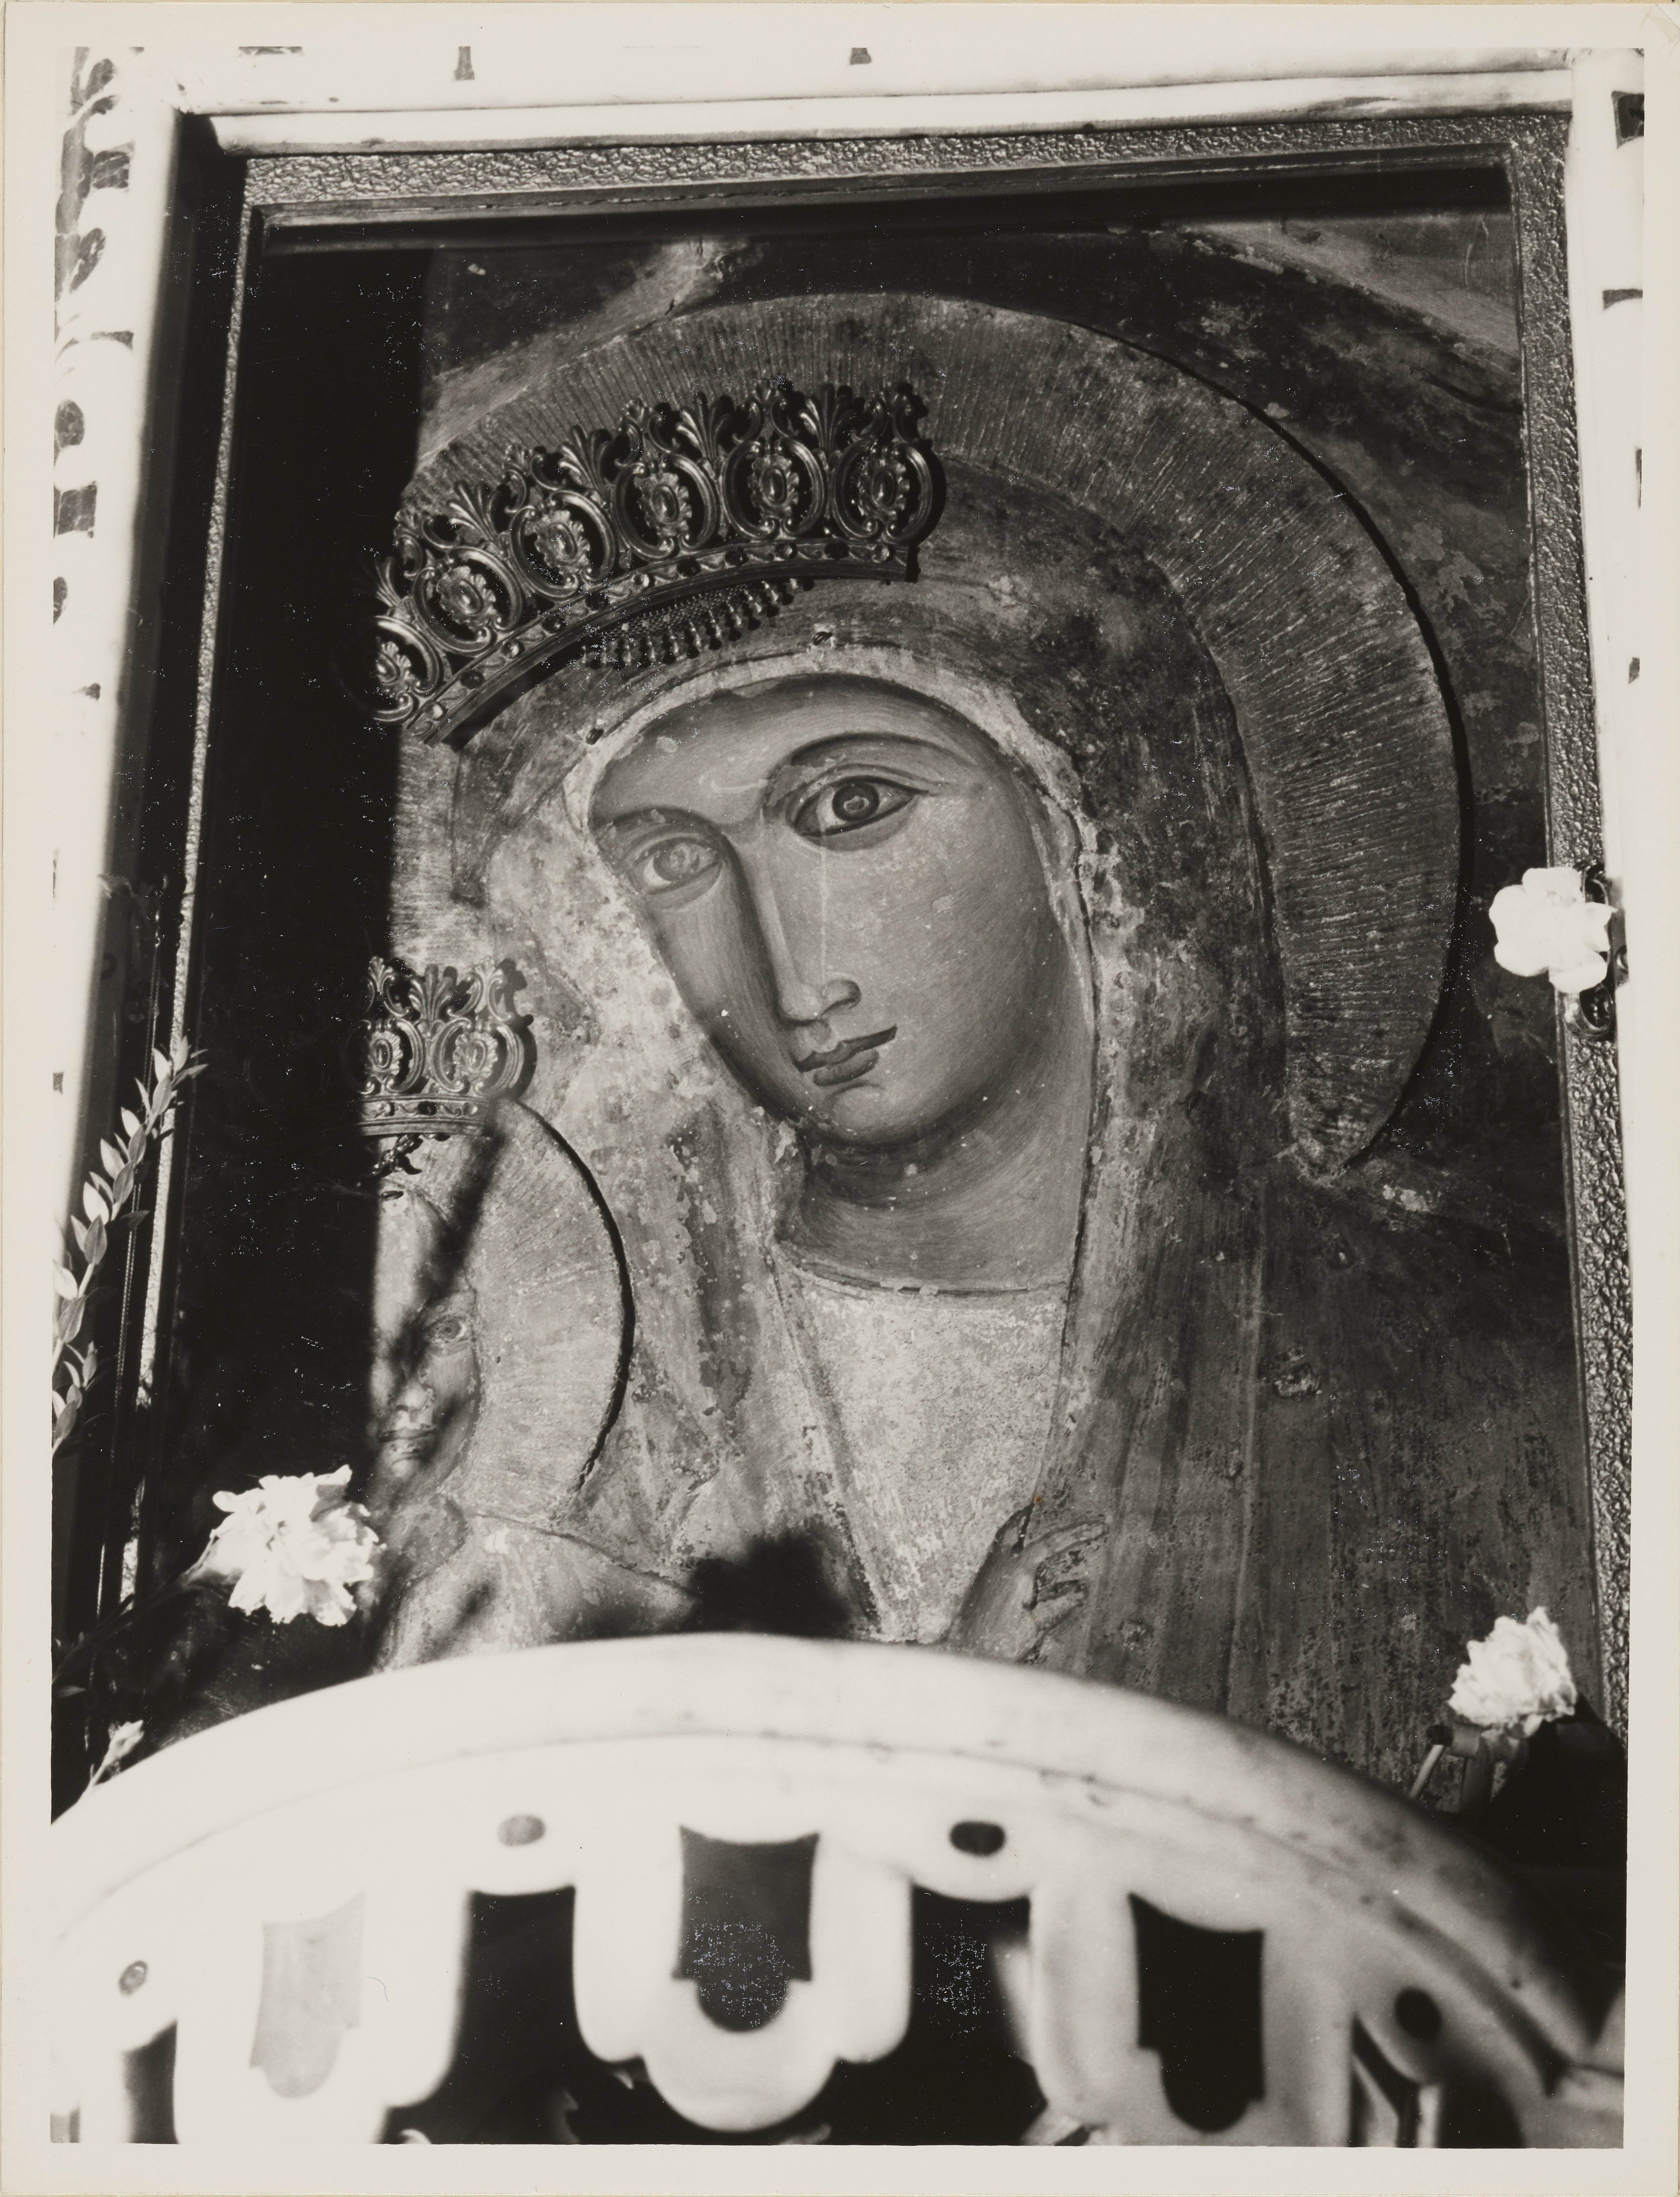 Fotografo non identificato, Castrovillari - Chiesa di S. Maria del Castello, La Madonna con il bambino, detta “La Madonna del castello”, 1951-1975, gelatina ai sali d'argento, MPI146100